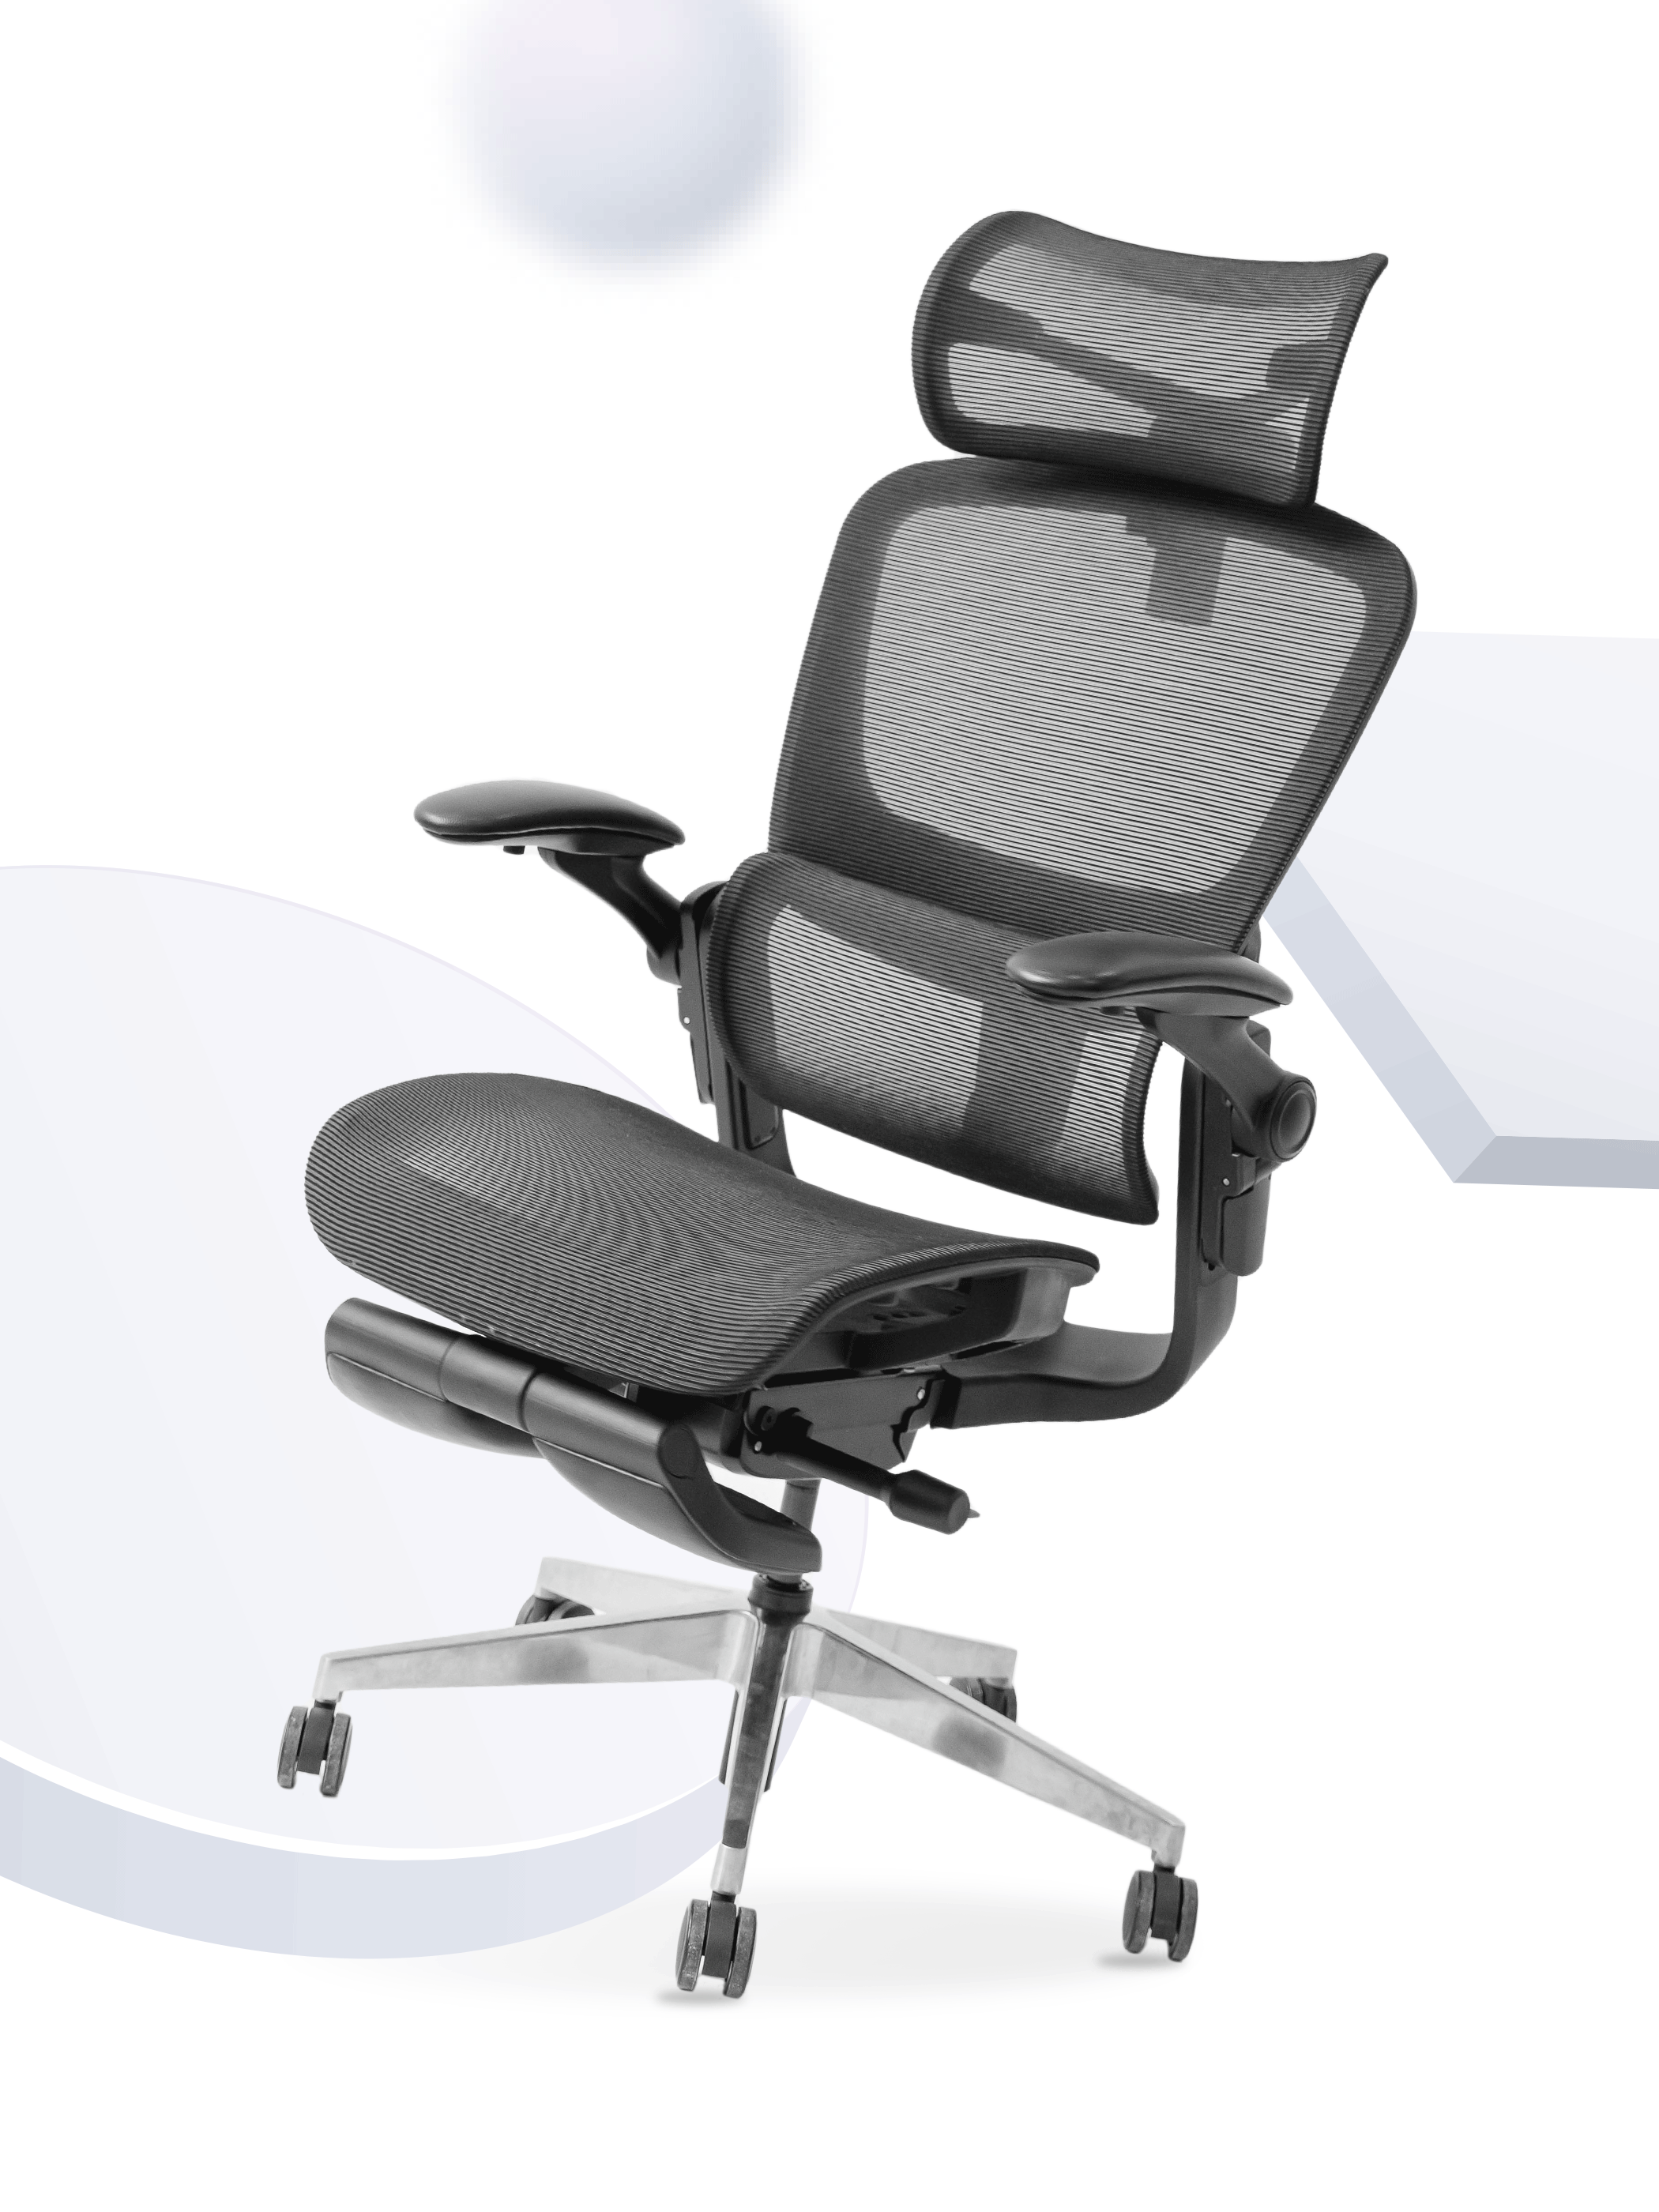 Ghế công thái học - Epione Easy Chair SE - Trải nghiệm chắc chắn